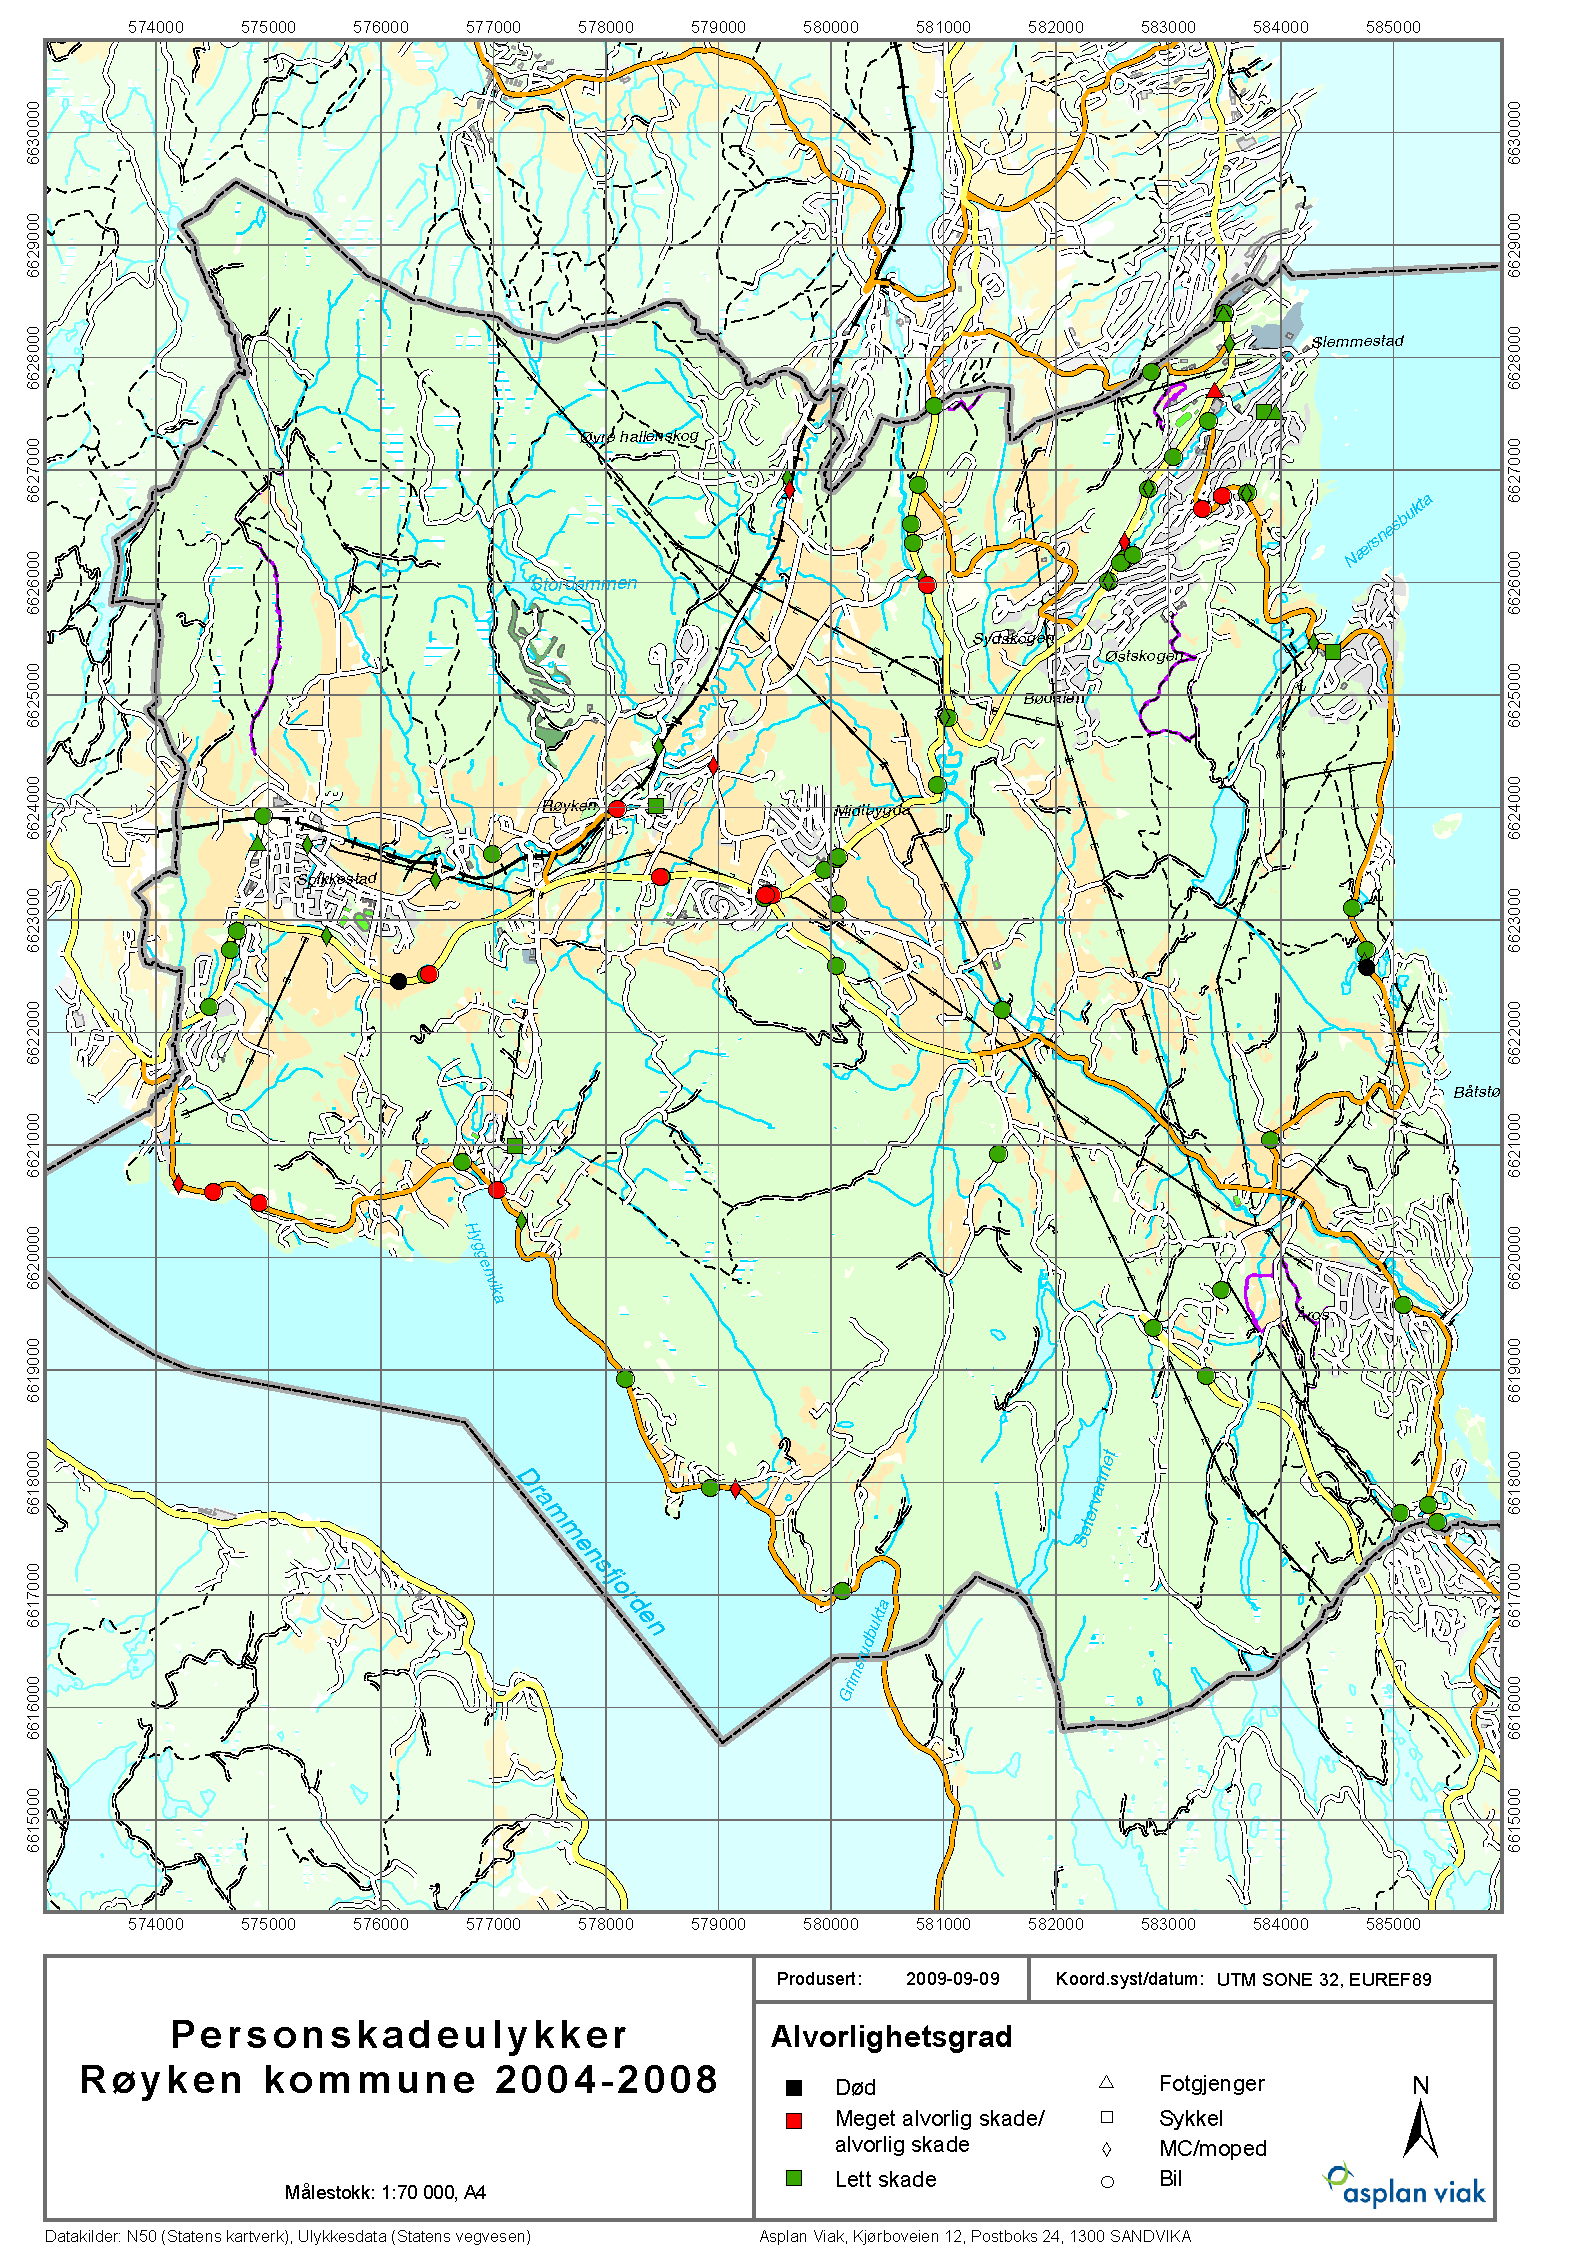 Trafikksikkerhetsplan for Røyken kommune 2011-2014 66 Geografisk plassering av ulykkene Figur 35 viser ulykkenes geografiske